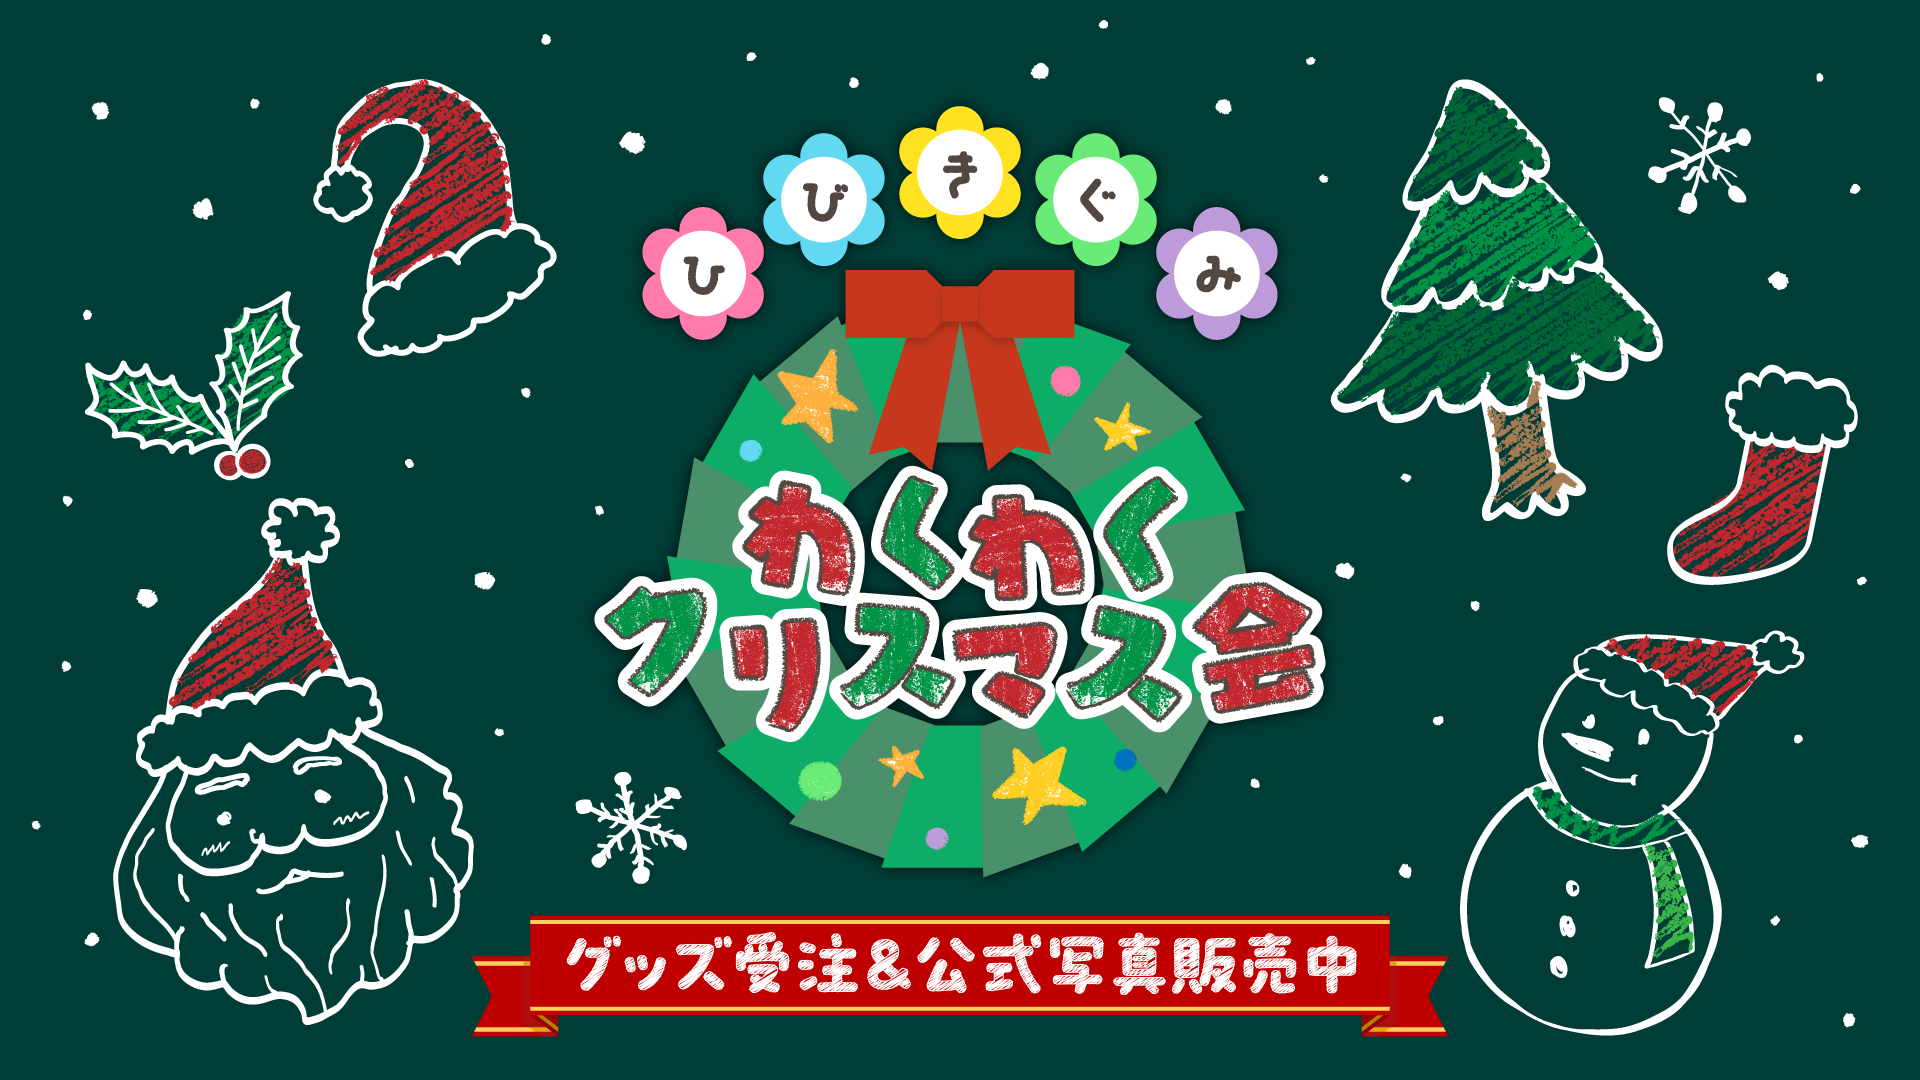 「ひびきぐみ わくわくクリスマス会」イベント情報